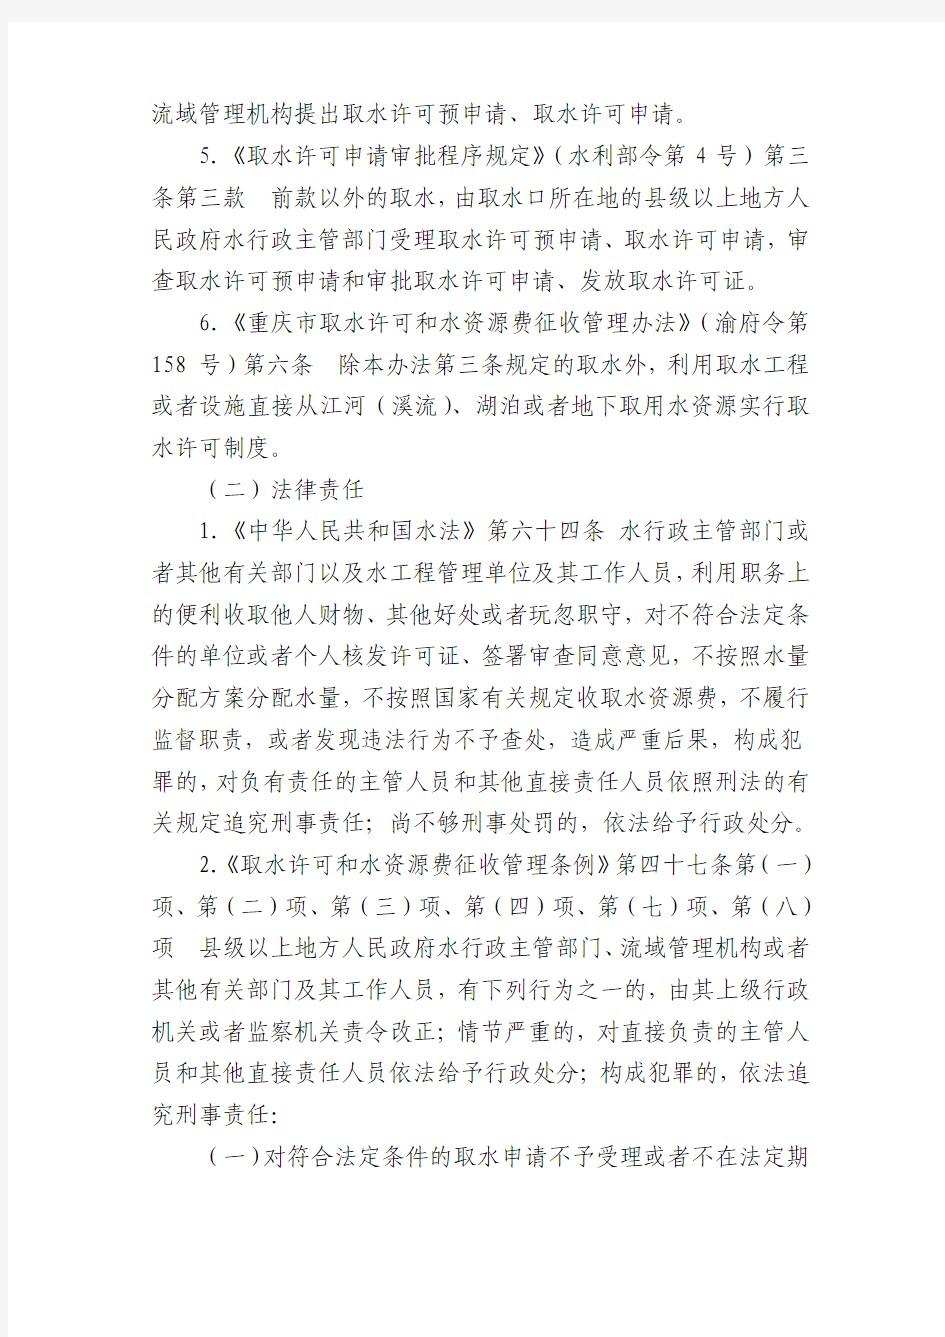 重庆市水利局行政许可清理情况(共36项)